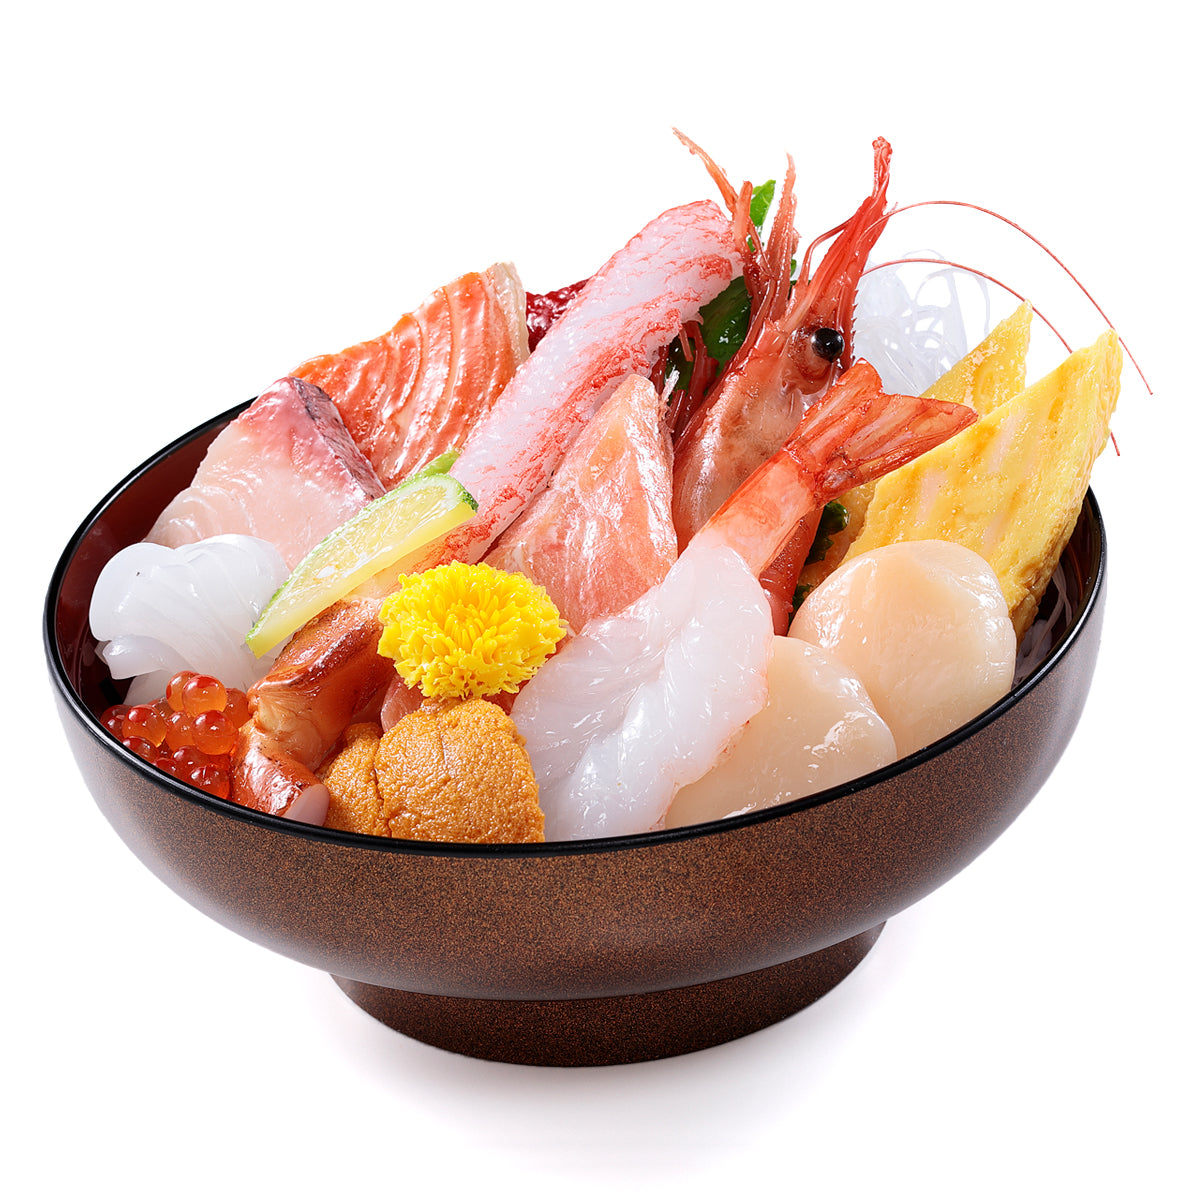 評判 末武サンプル 食品サンプルキーホルダー 海鮮丼 k-15563